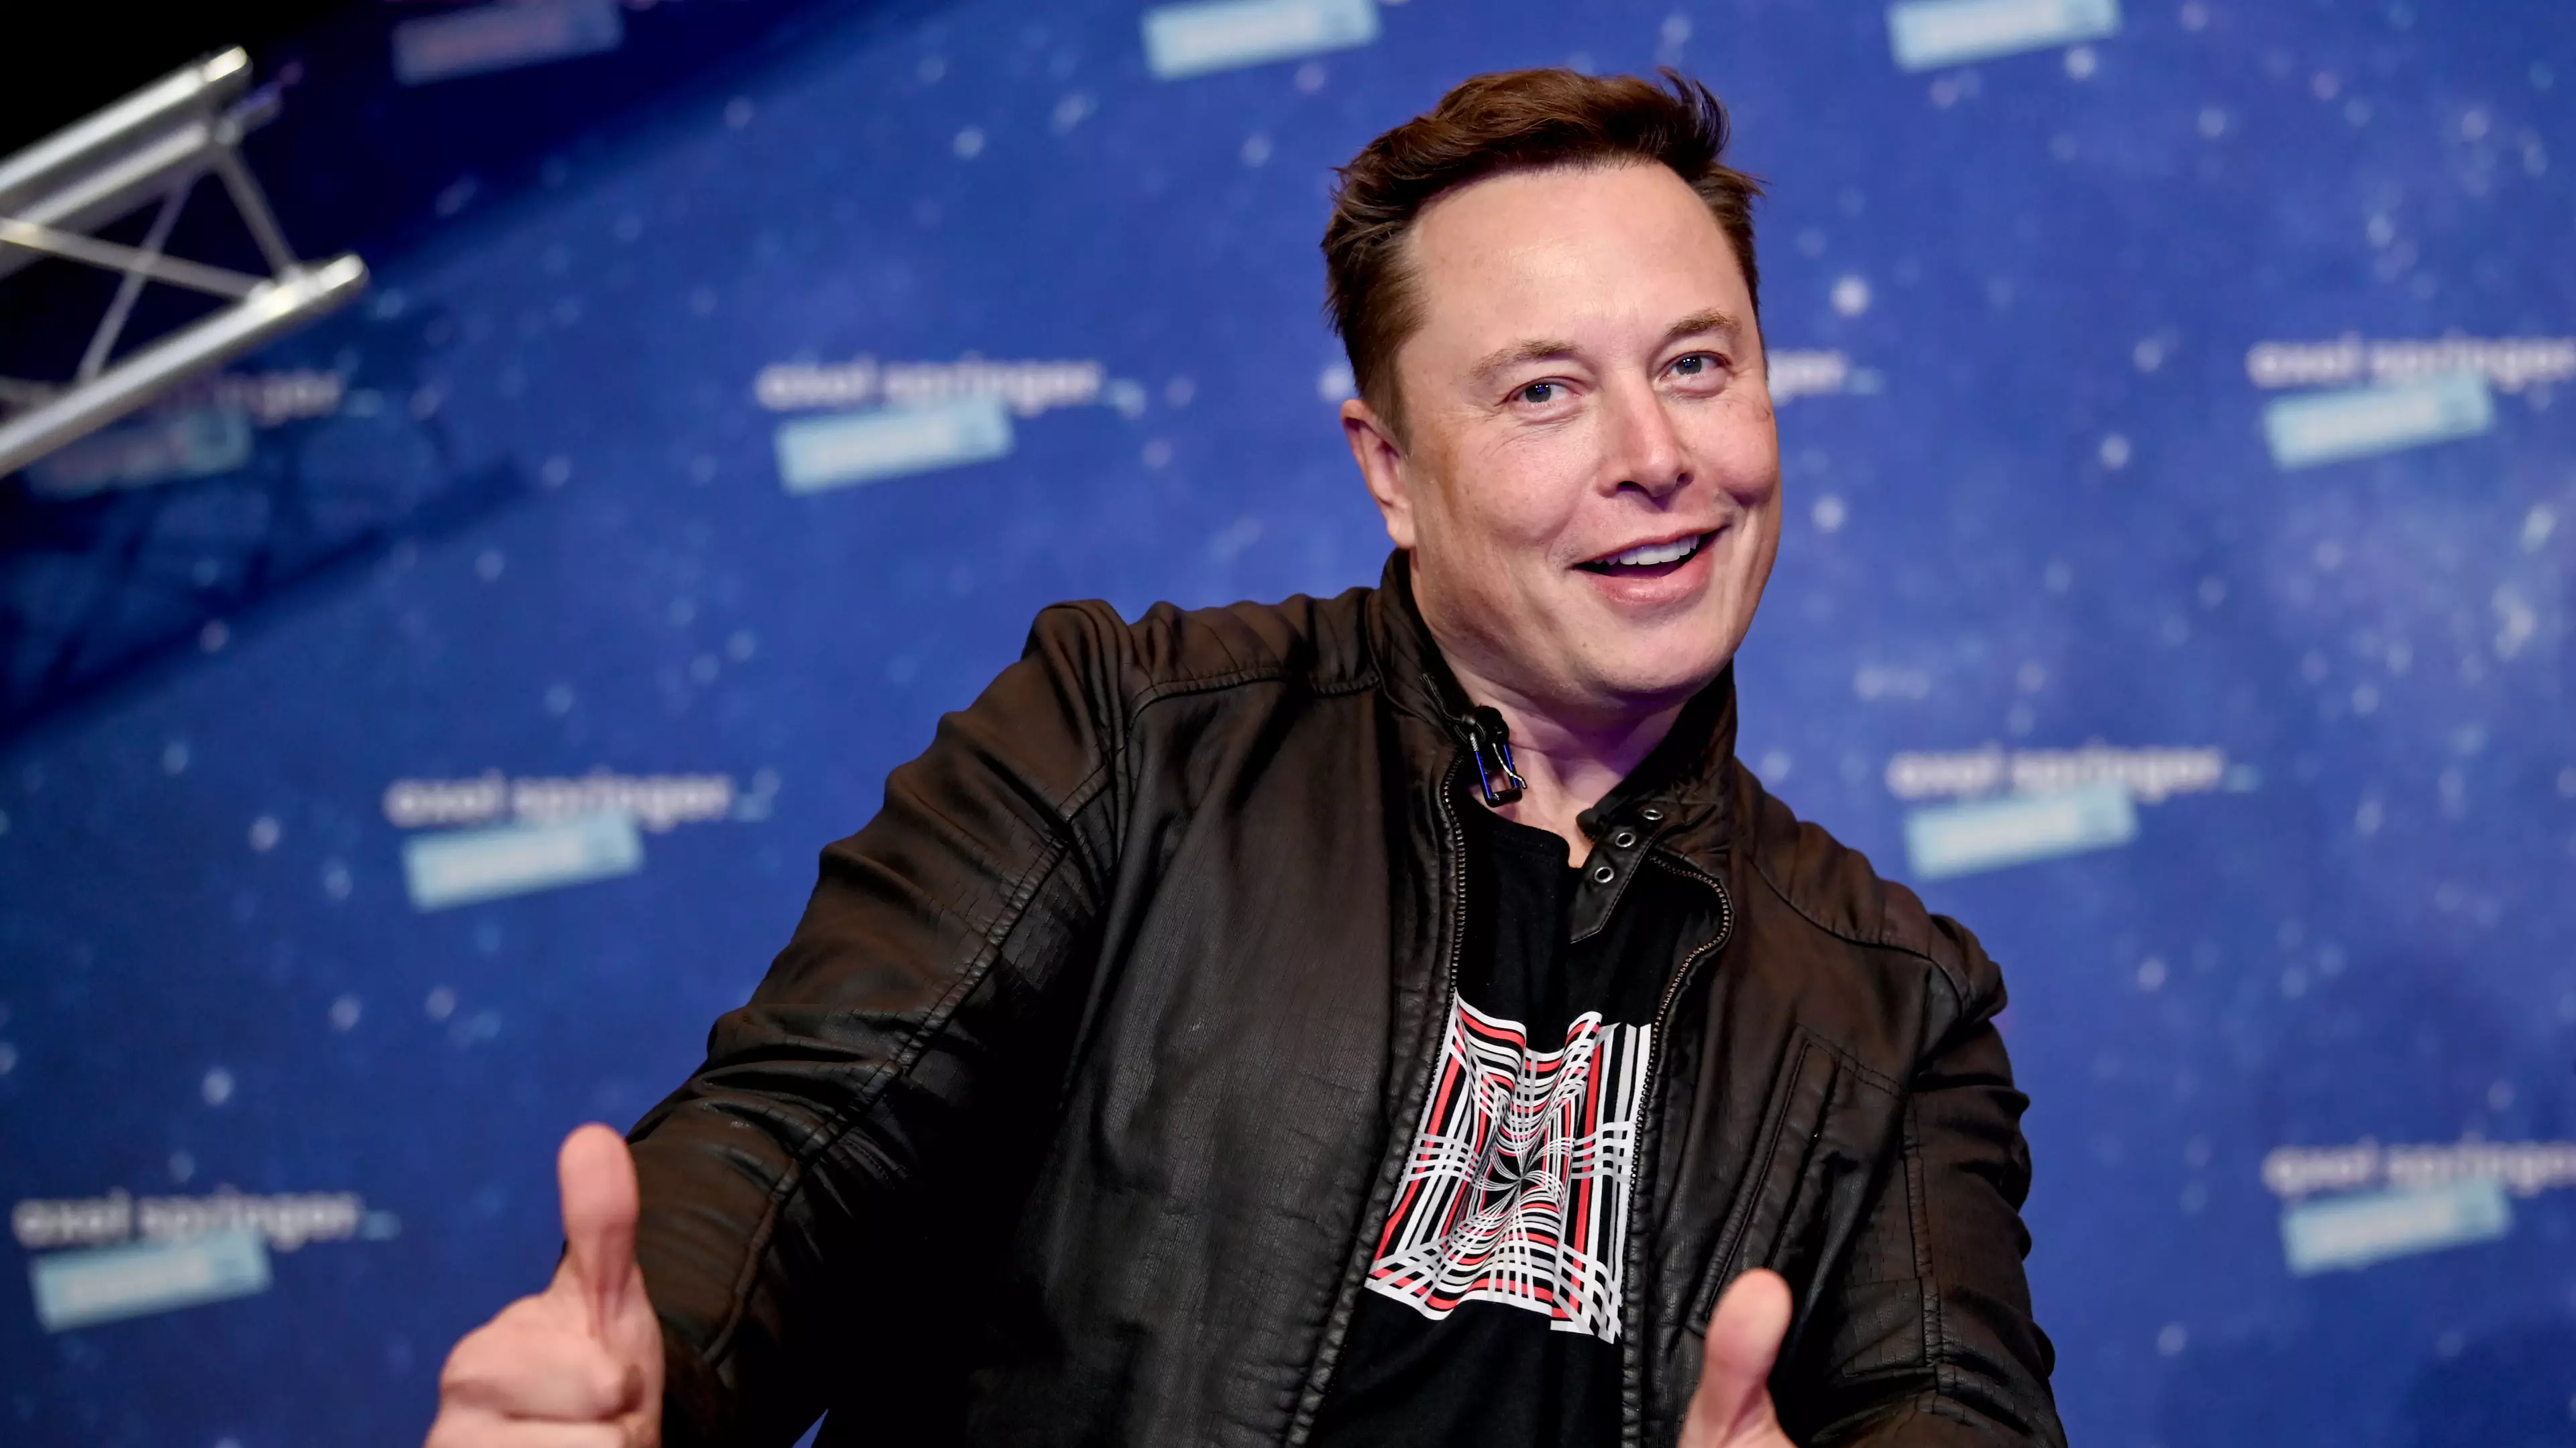 Elon Musk Announces $100 Million Prize For Best Carbon Capture Technology Idea